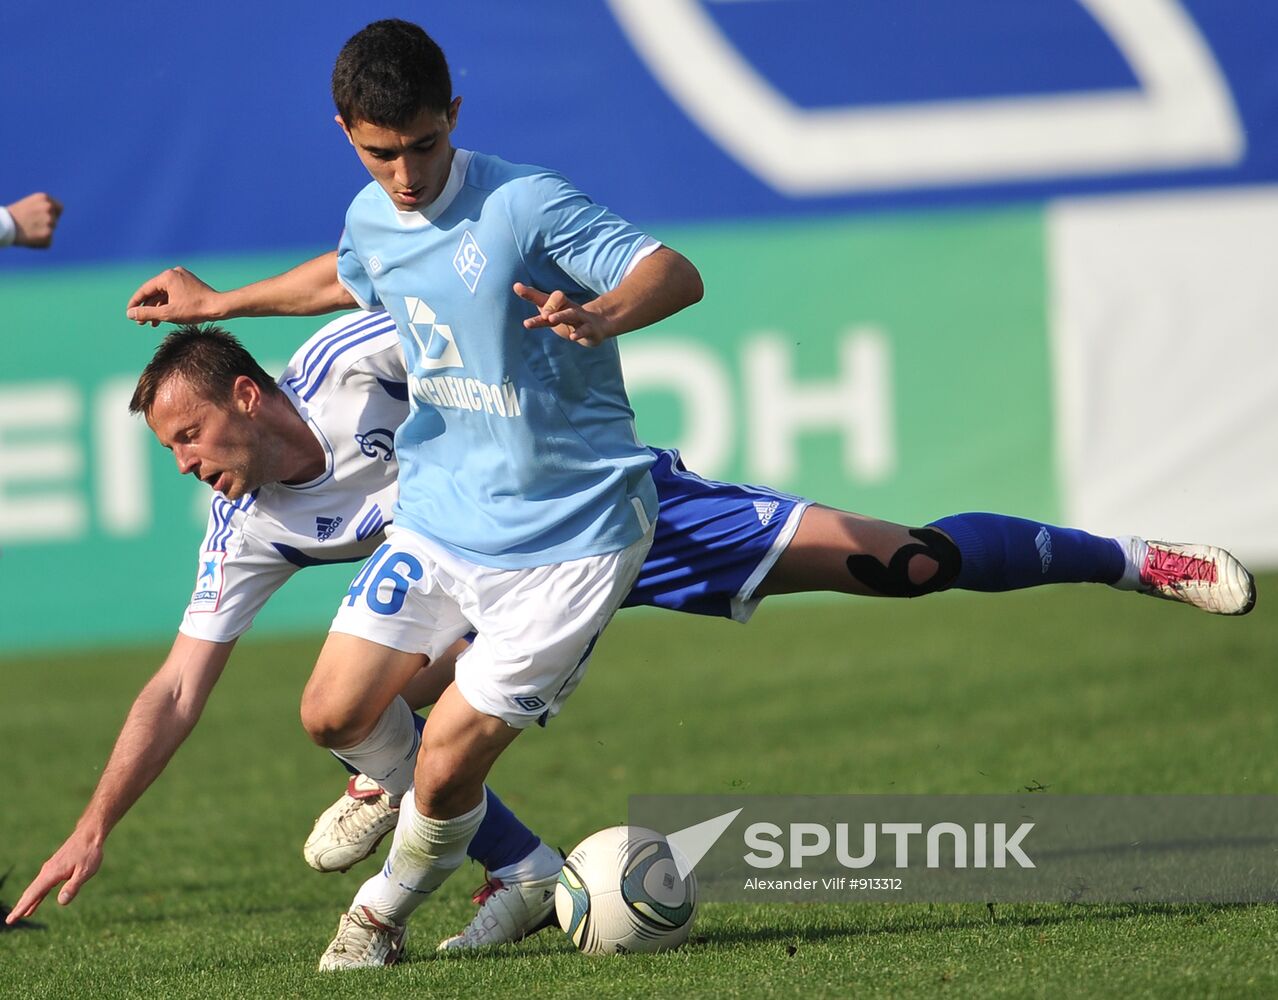 Football Premier League match Dinamo - Krilya Sovietov